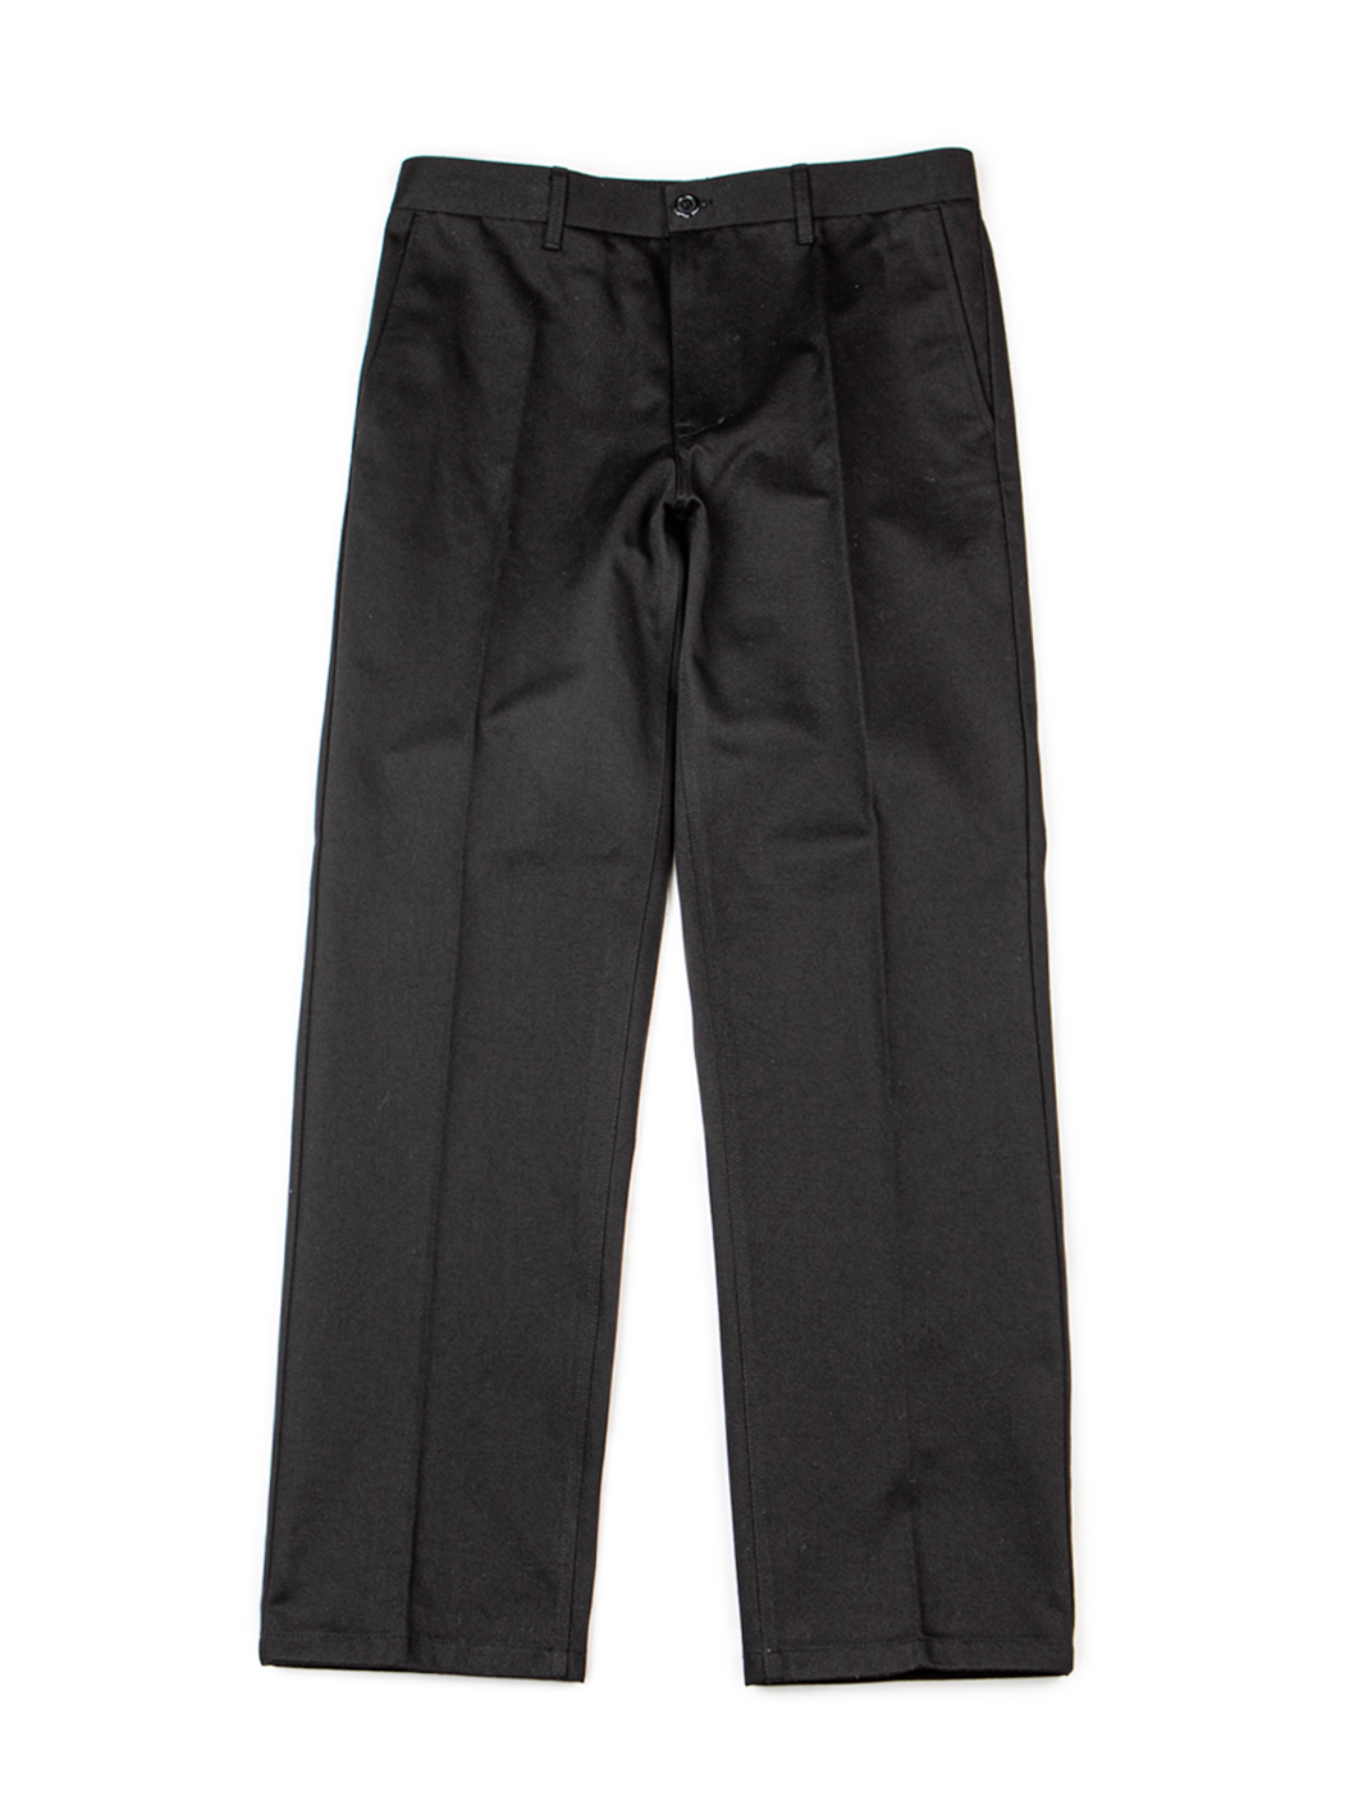 Symmetric tapered pants #13 [black]